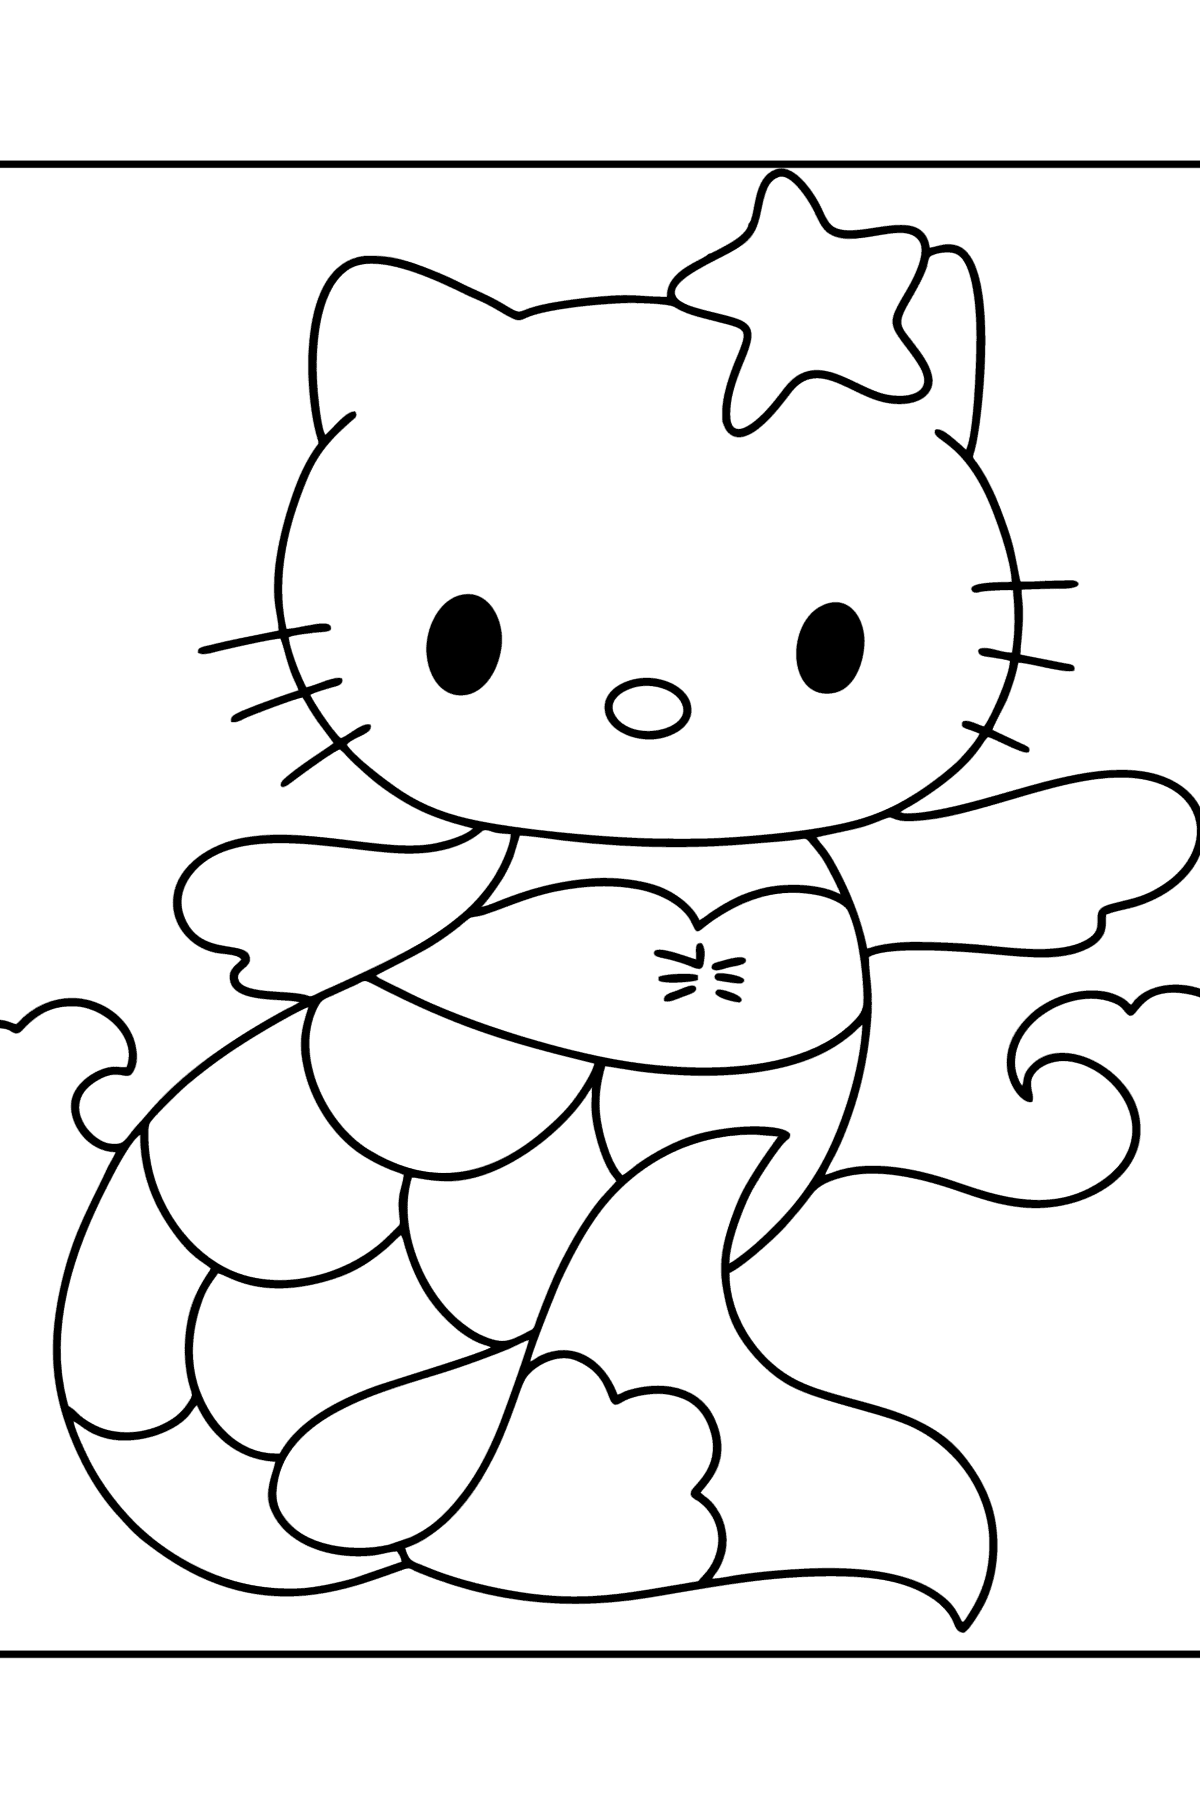 Kleurplaat Hello Kitty meermin - kleurplaten voor kinderen